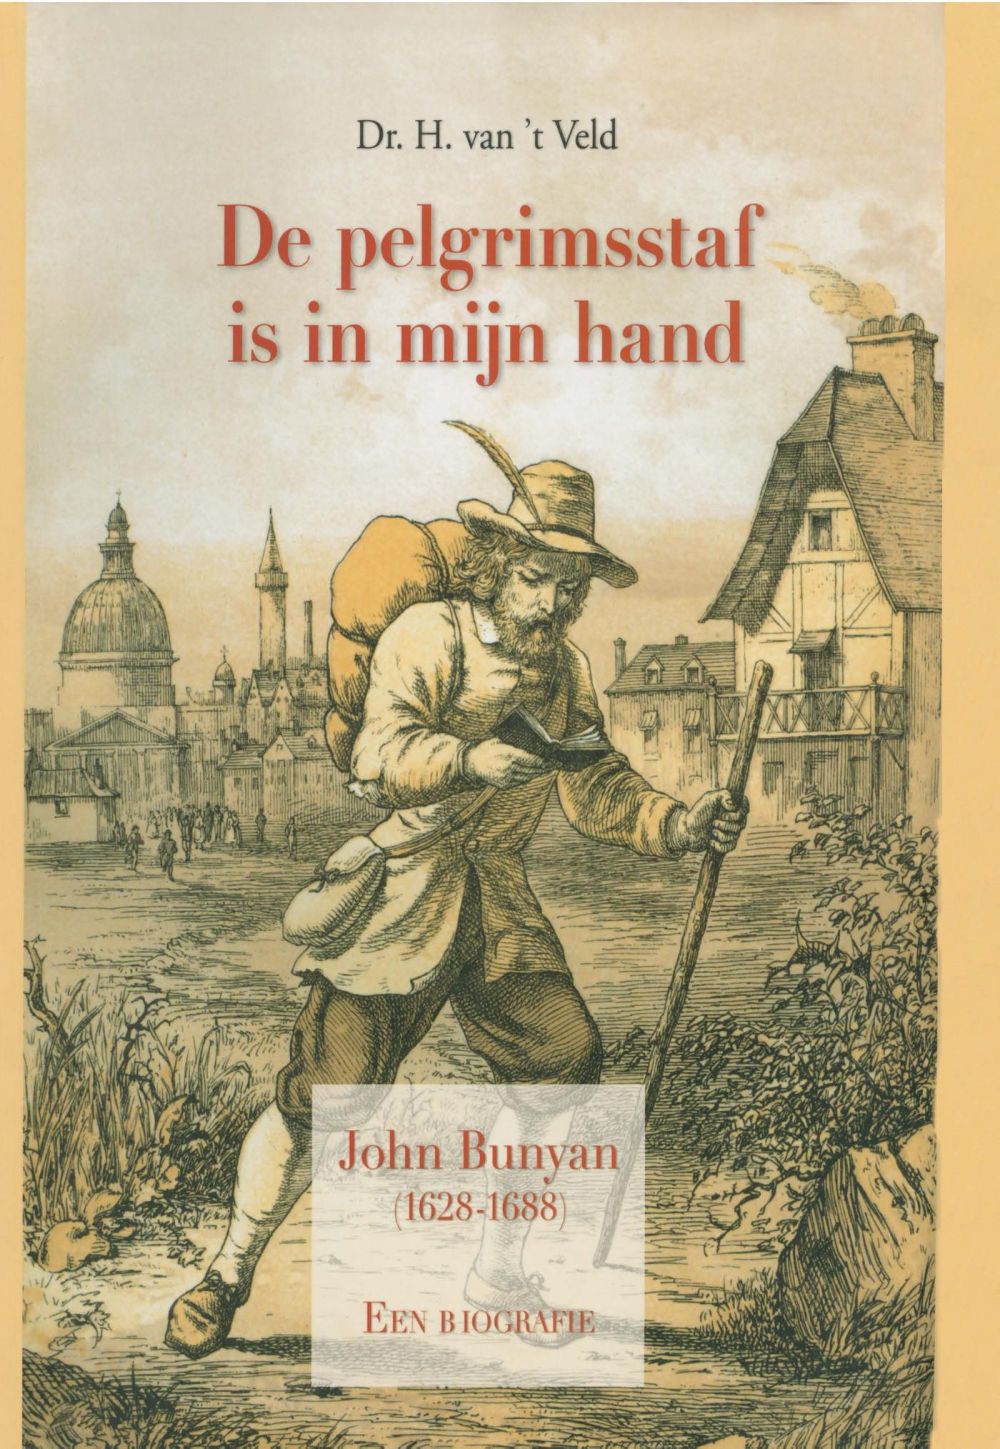 De pelgrimsstaf is in mijn hand - John Bunyan (1628-1688)